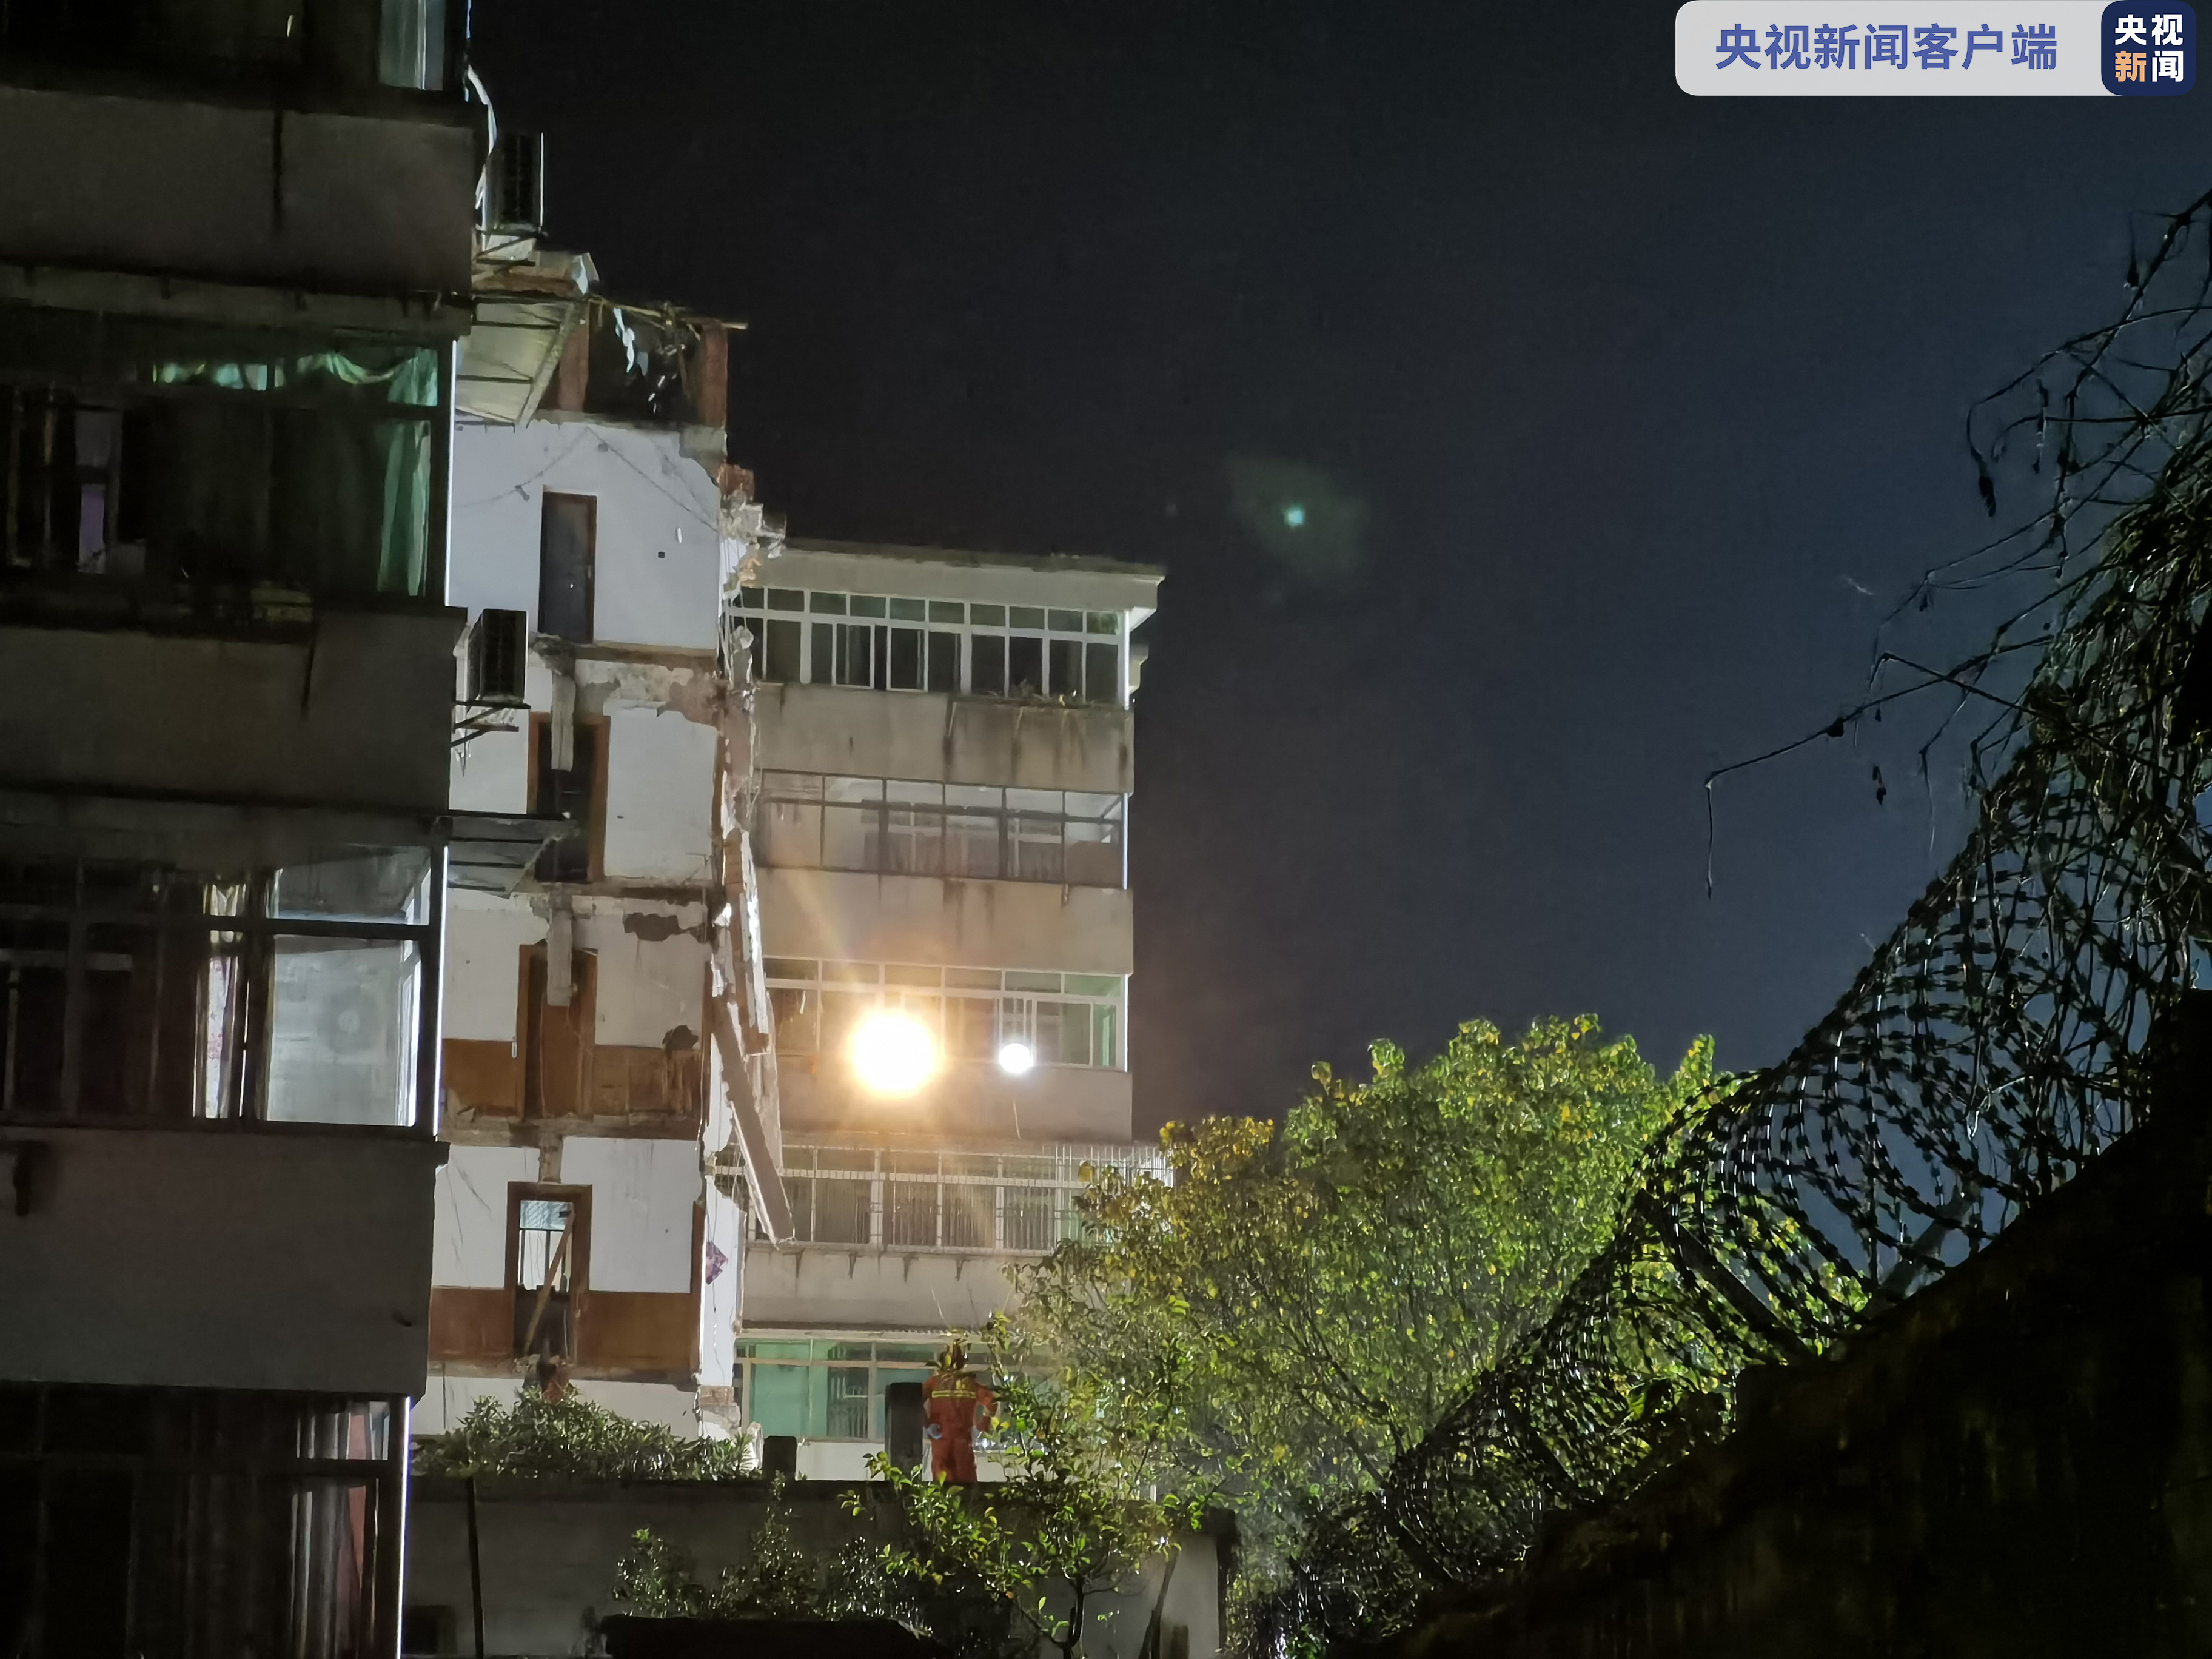 江西省赣江新区宿舍楼倒塌 4名失踪人员被搜寻已无生命体征